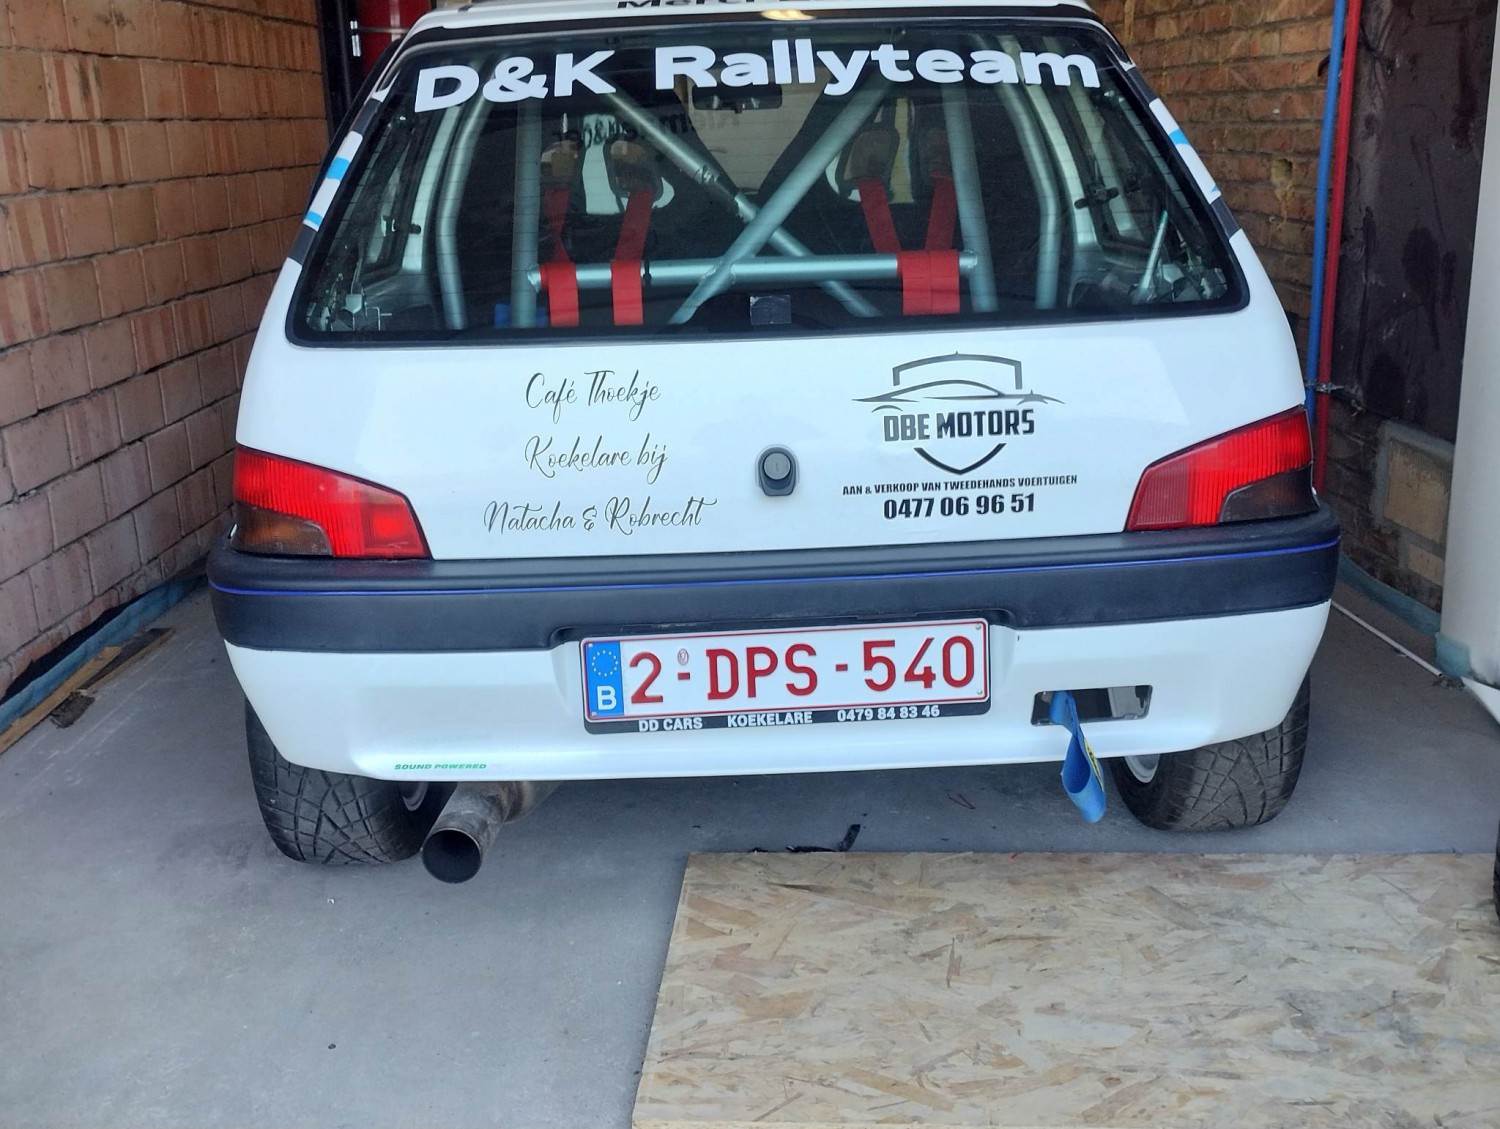 Debuut voor het D&K Rallyteam in de TBR Short Rally: Vooral ervaring opdoen is ons doel !